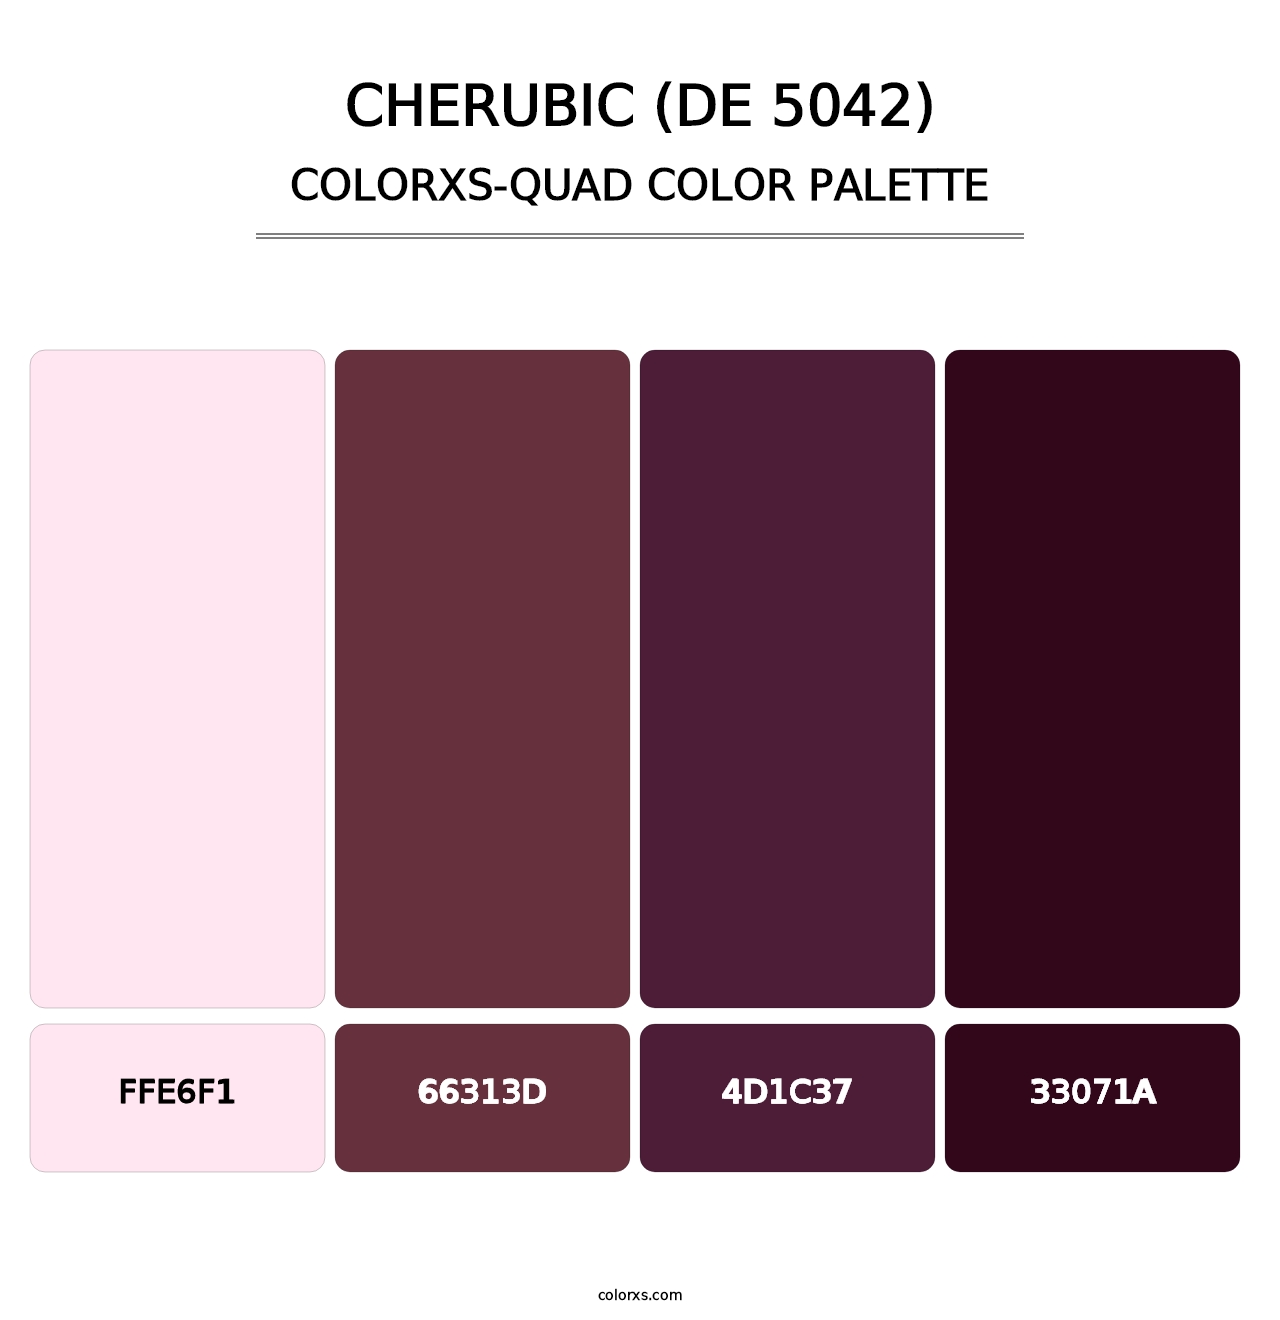 Cherubic (DE 5042) - Colorxs Quad Palette